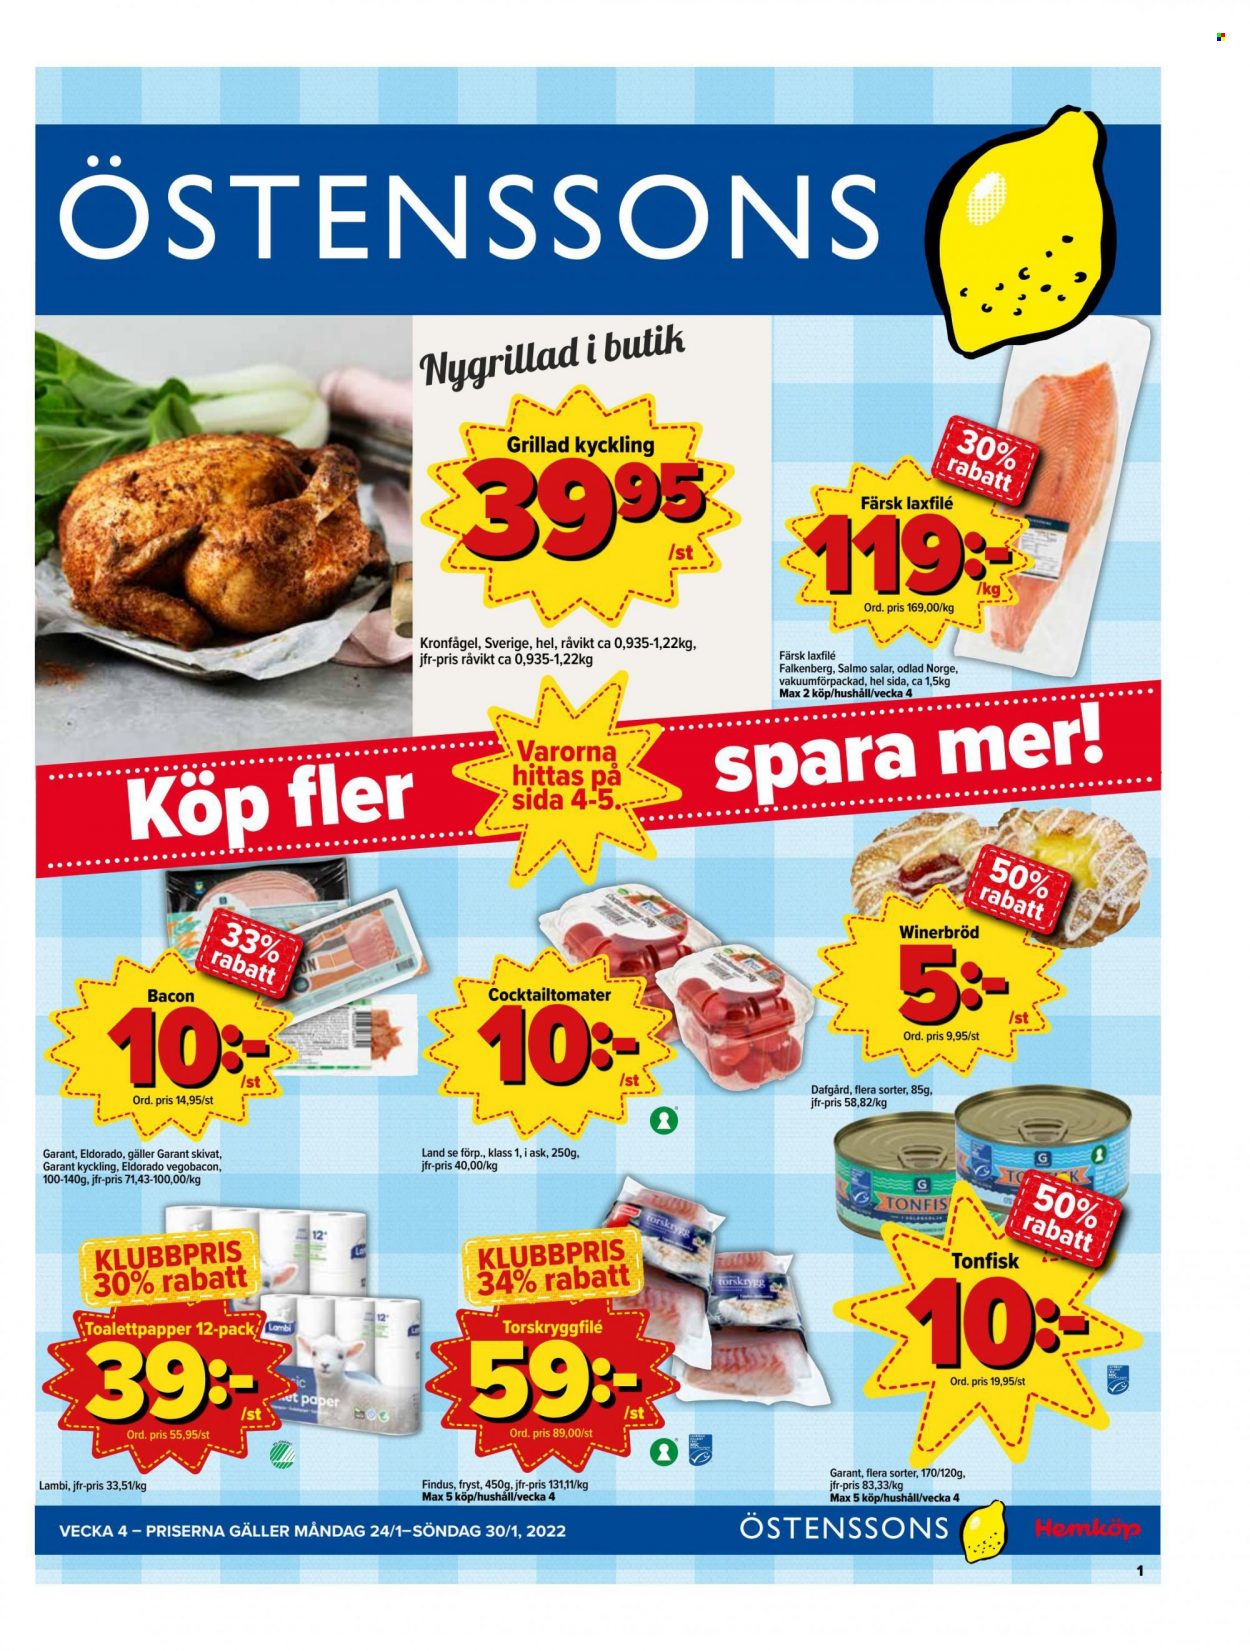 Östenssons reklamblad - 24/1 2022 - 30/1 2022.